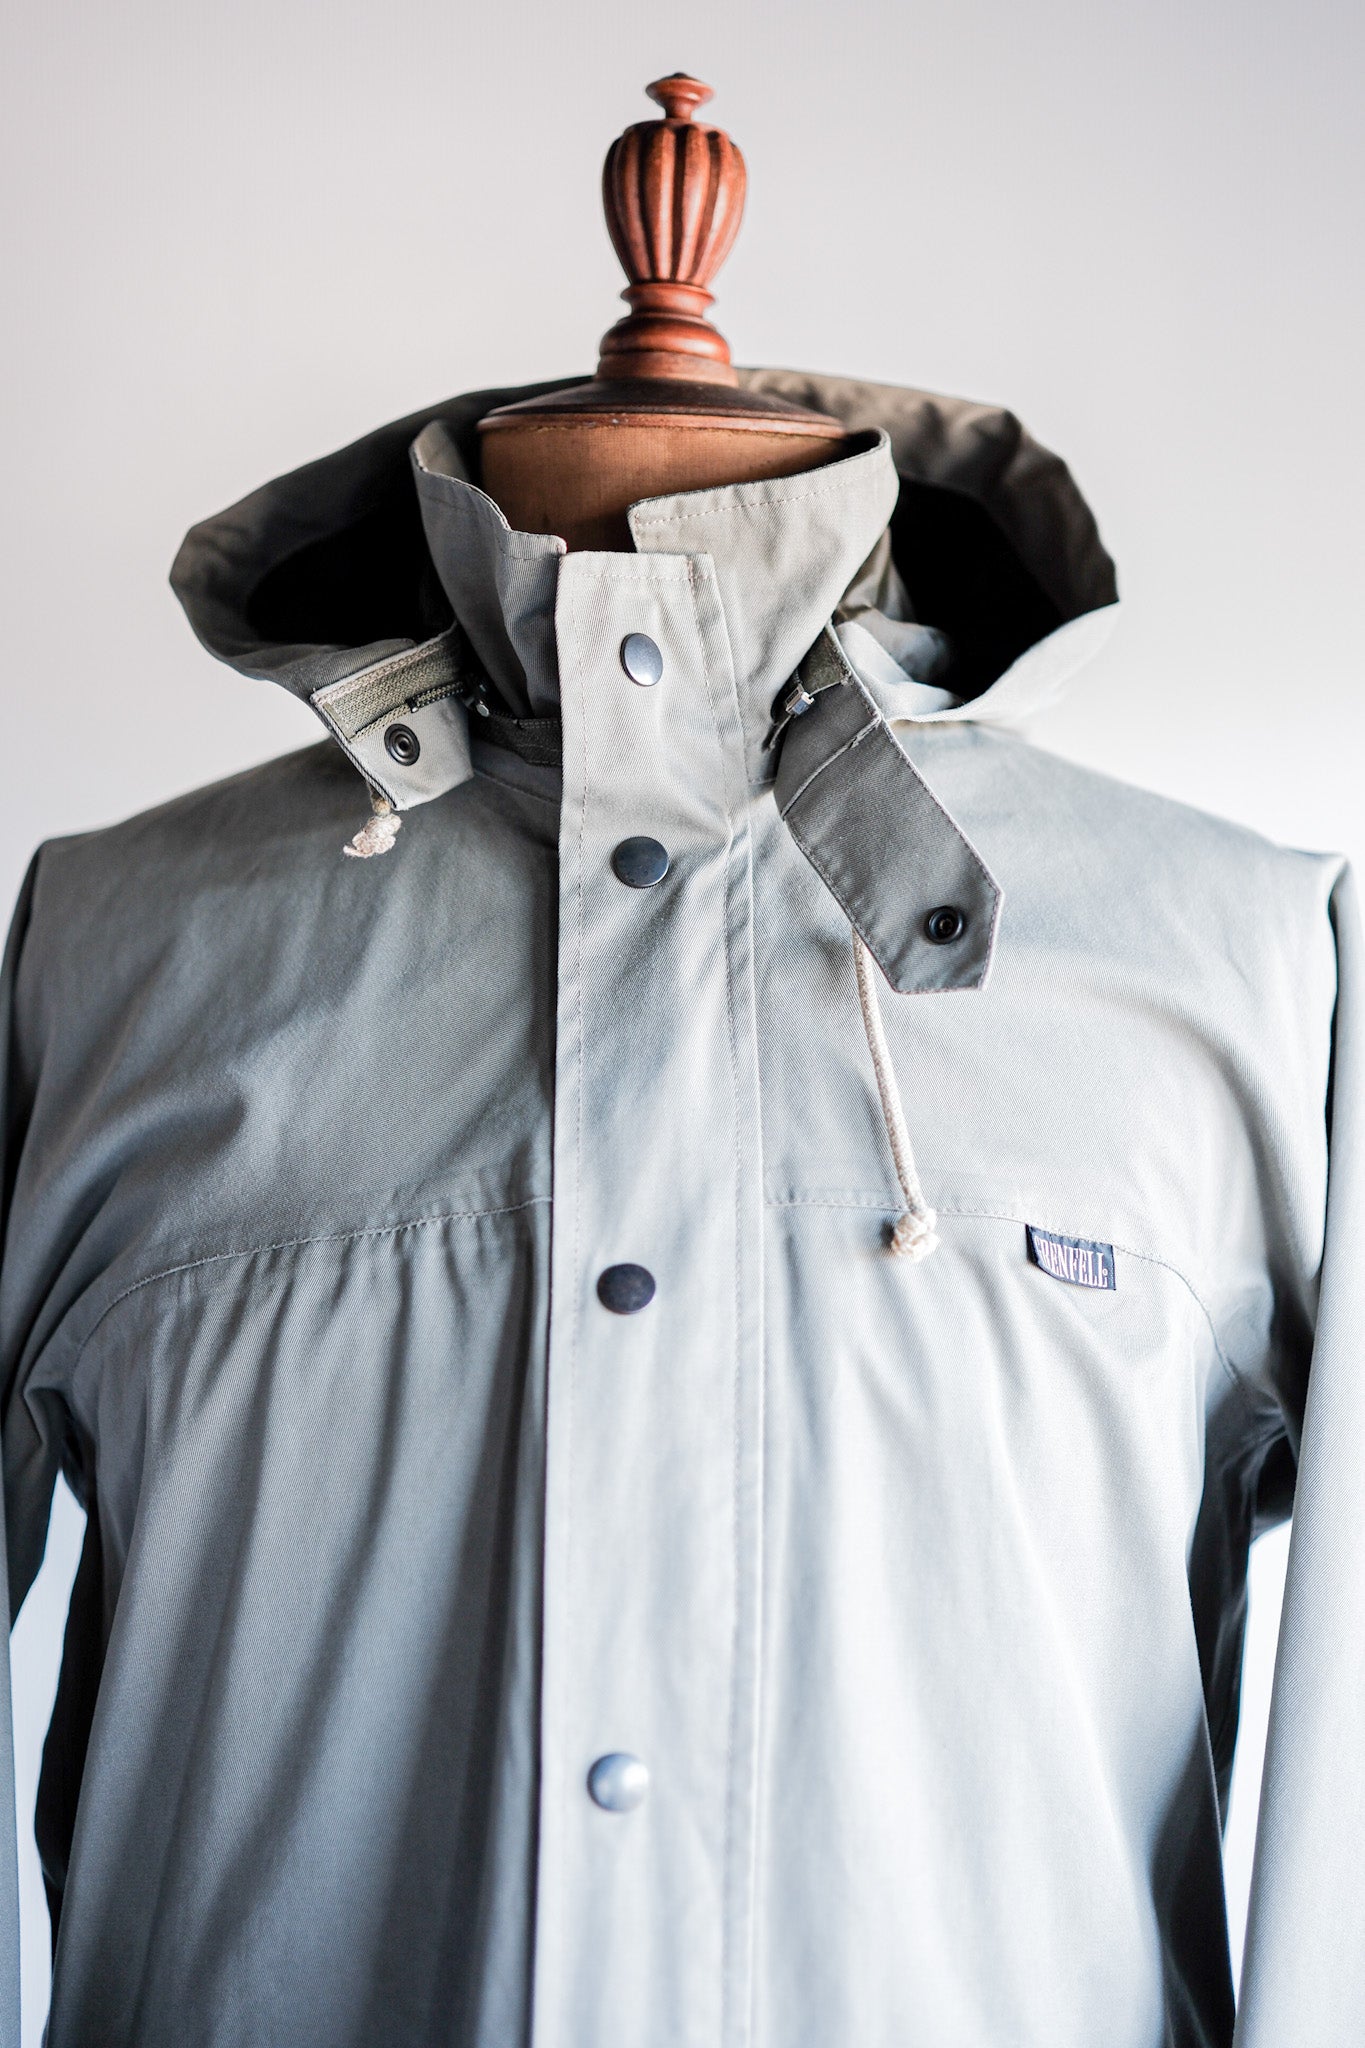 [~ 80 년대] Vintage Grenfell Munro Jacket Size.s "Mountain Tag"